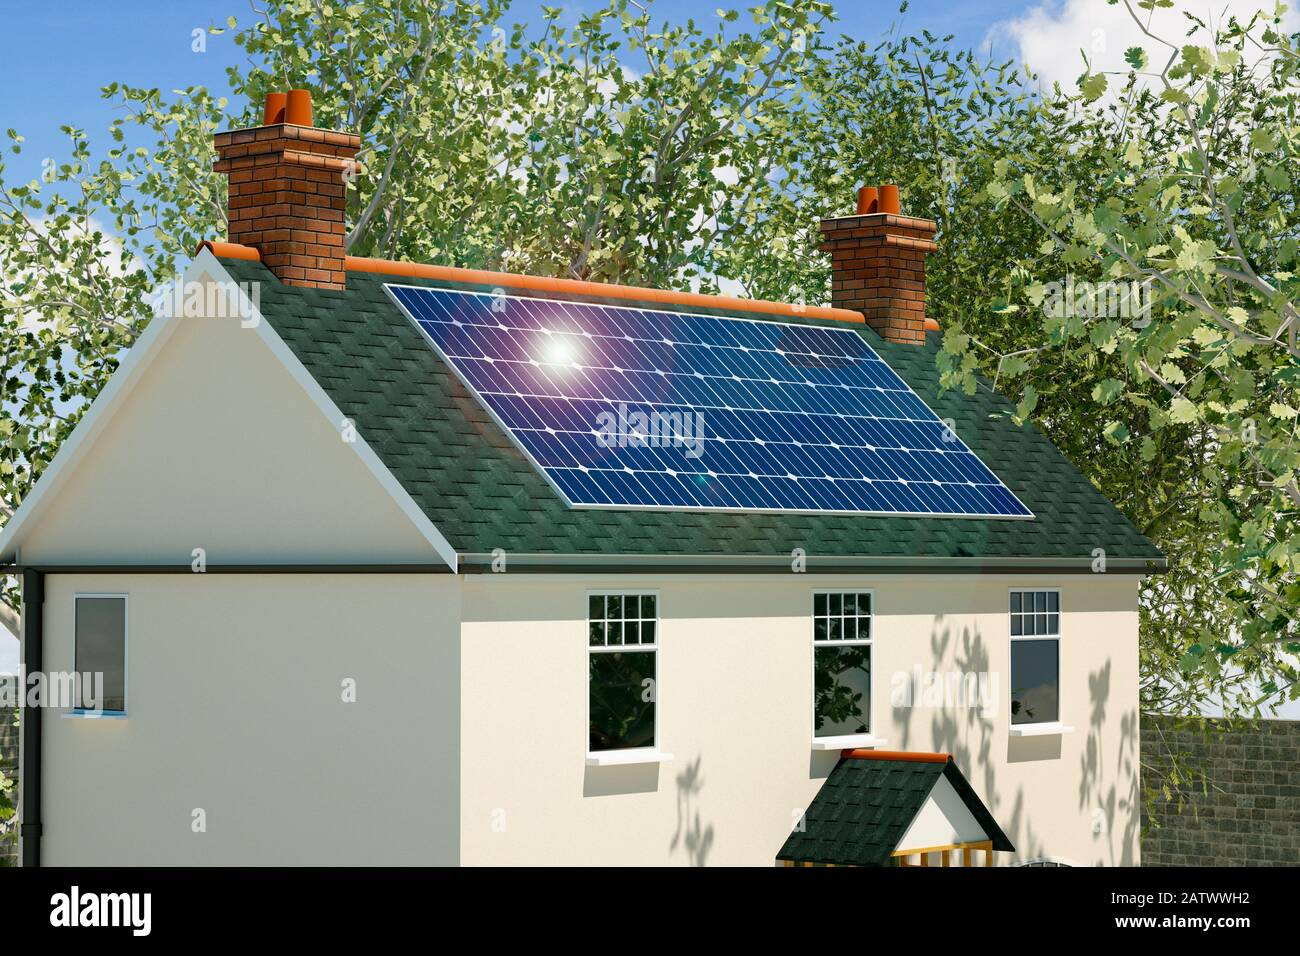 Modell eines traditionellen alten britischen Cottages mit Solarpaneelen auf dem Dach Stockfoto